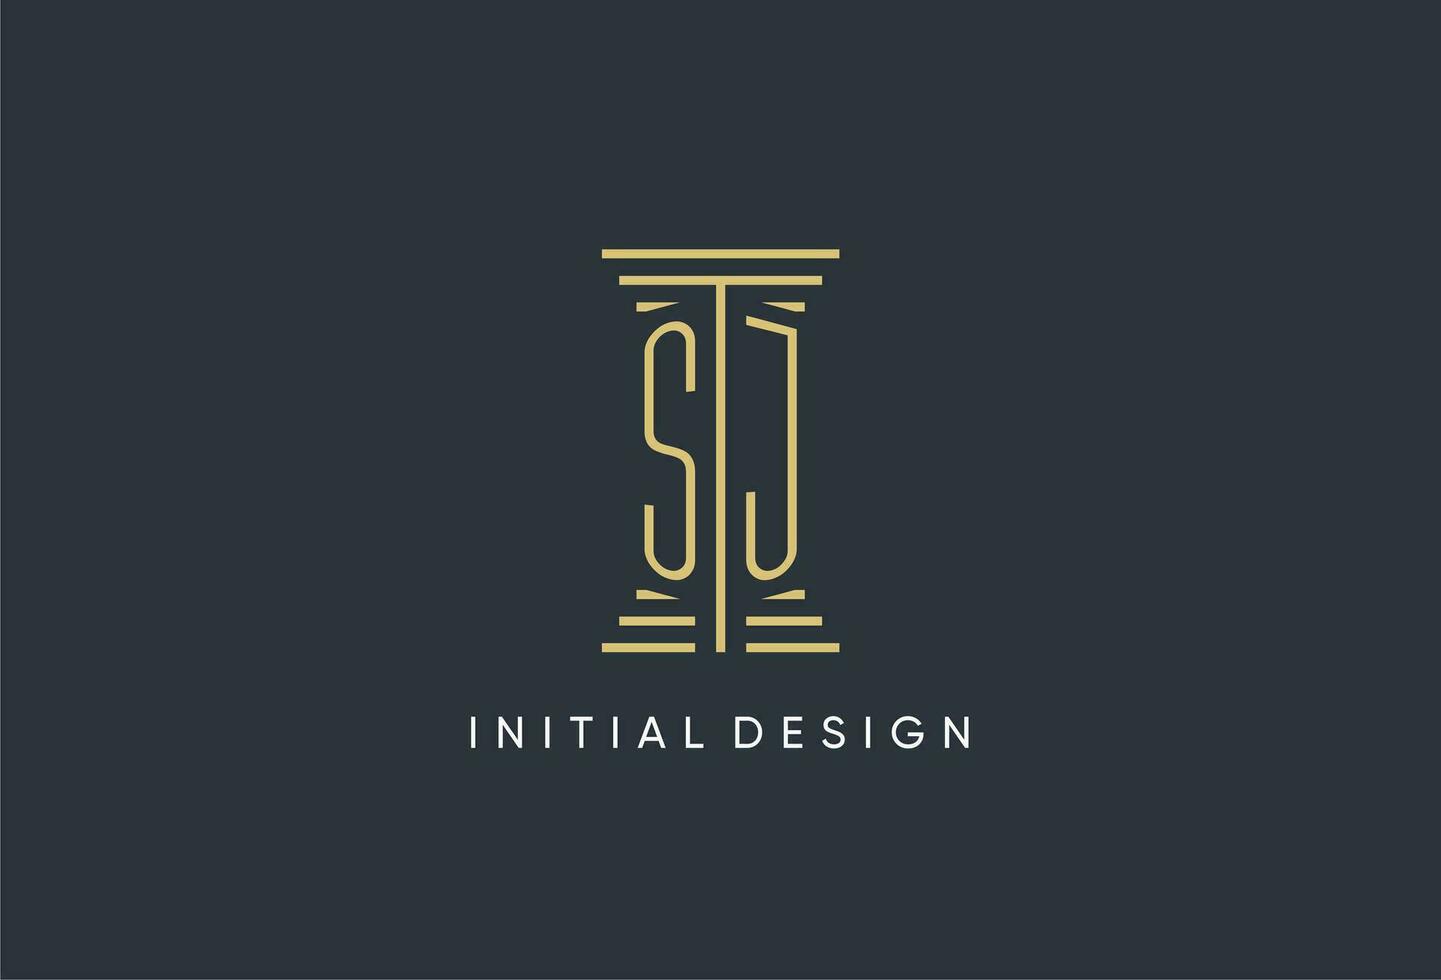 sj Initiale Monogramm mit Säule gestalten Logo Design vektor